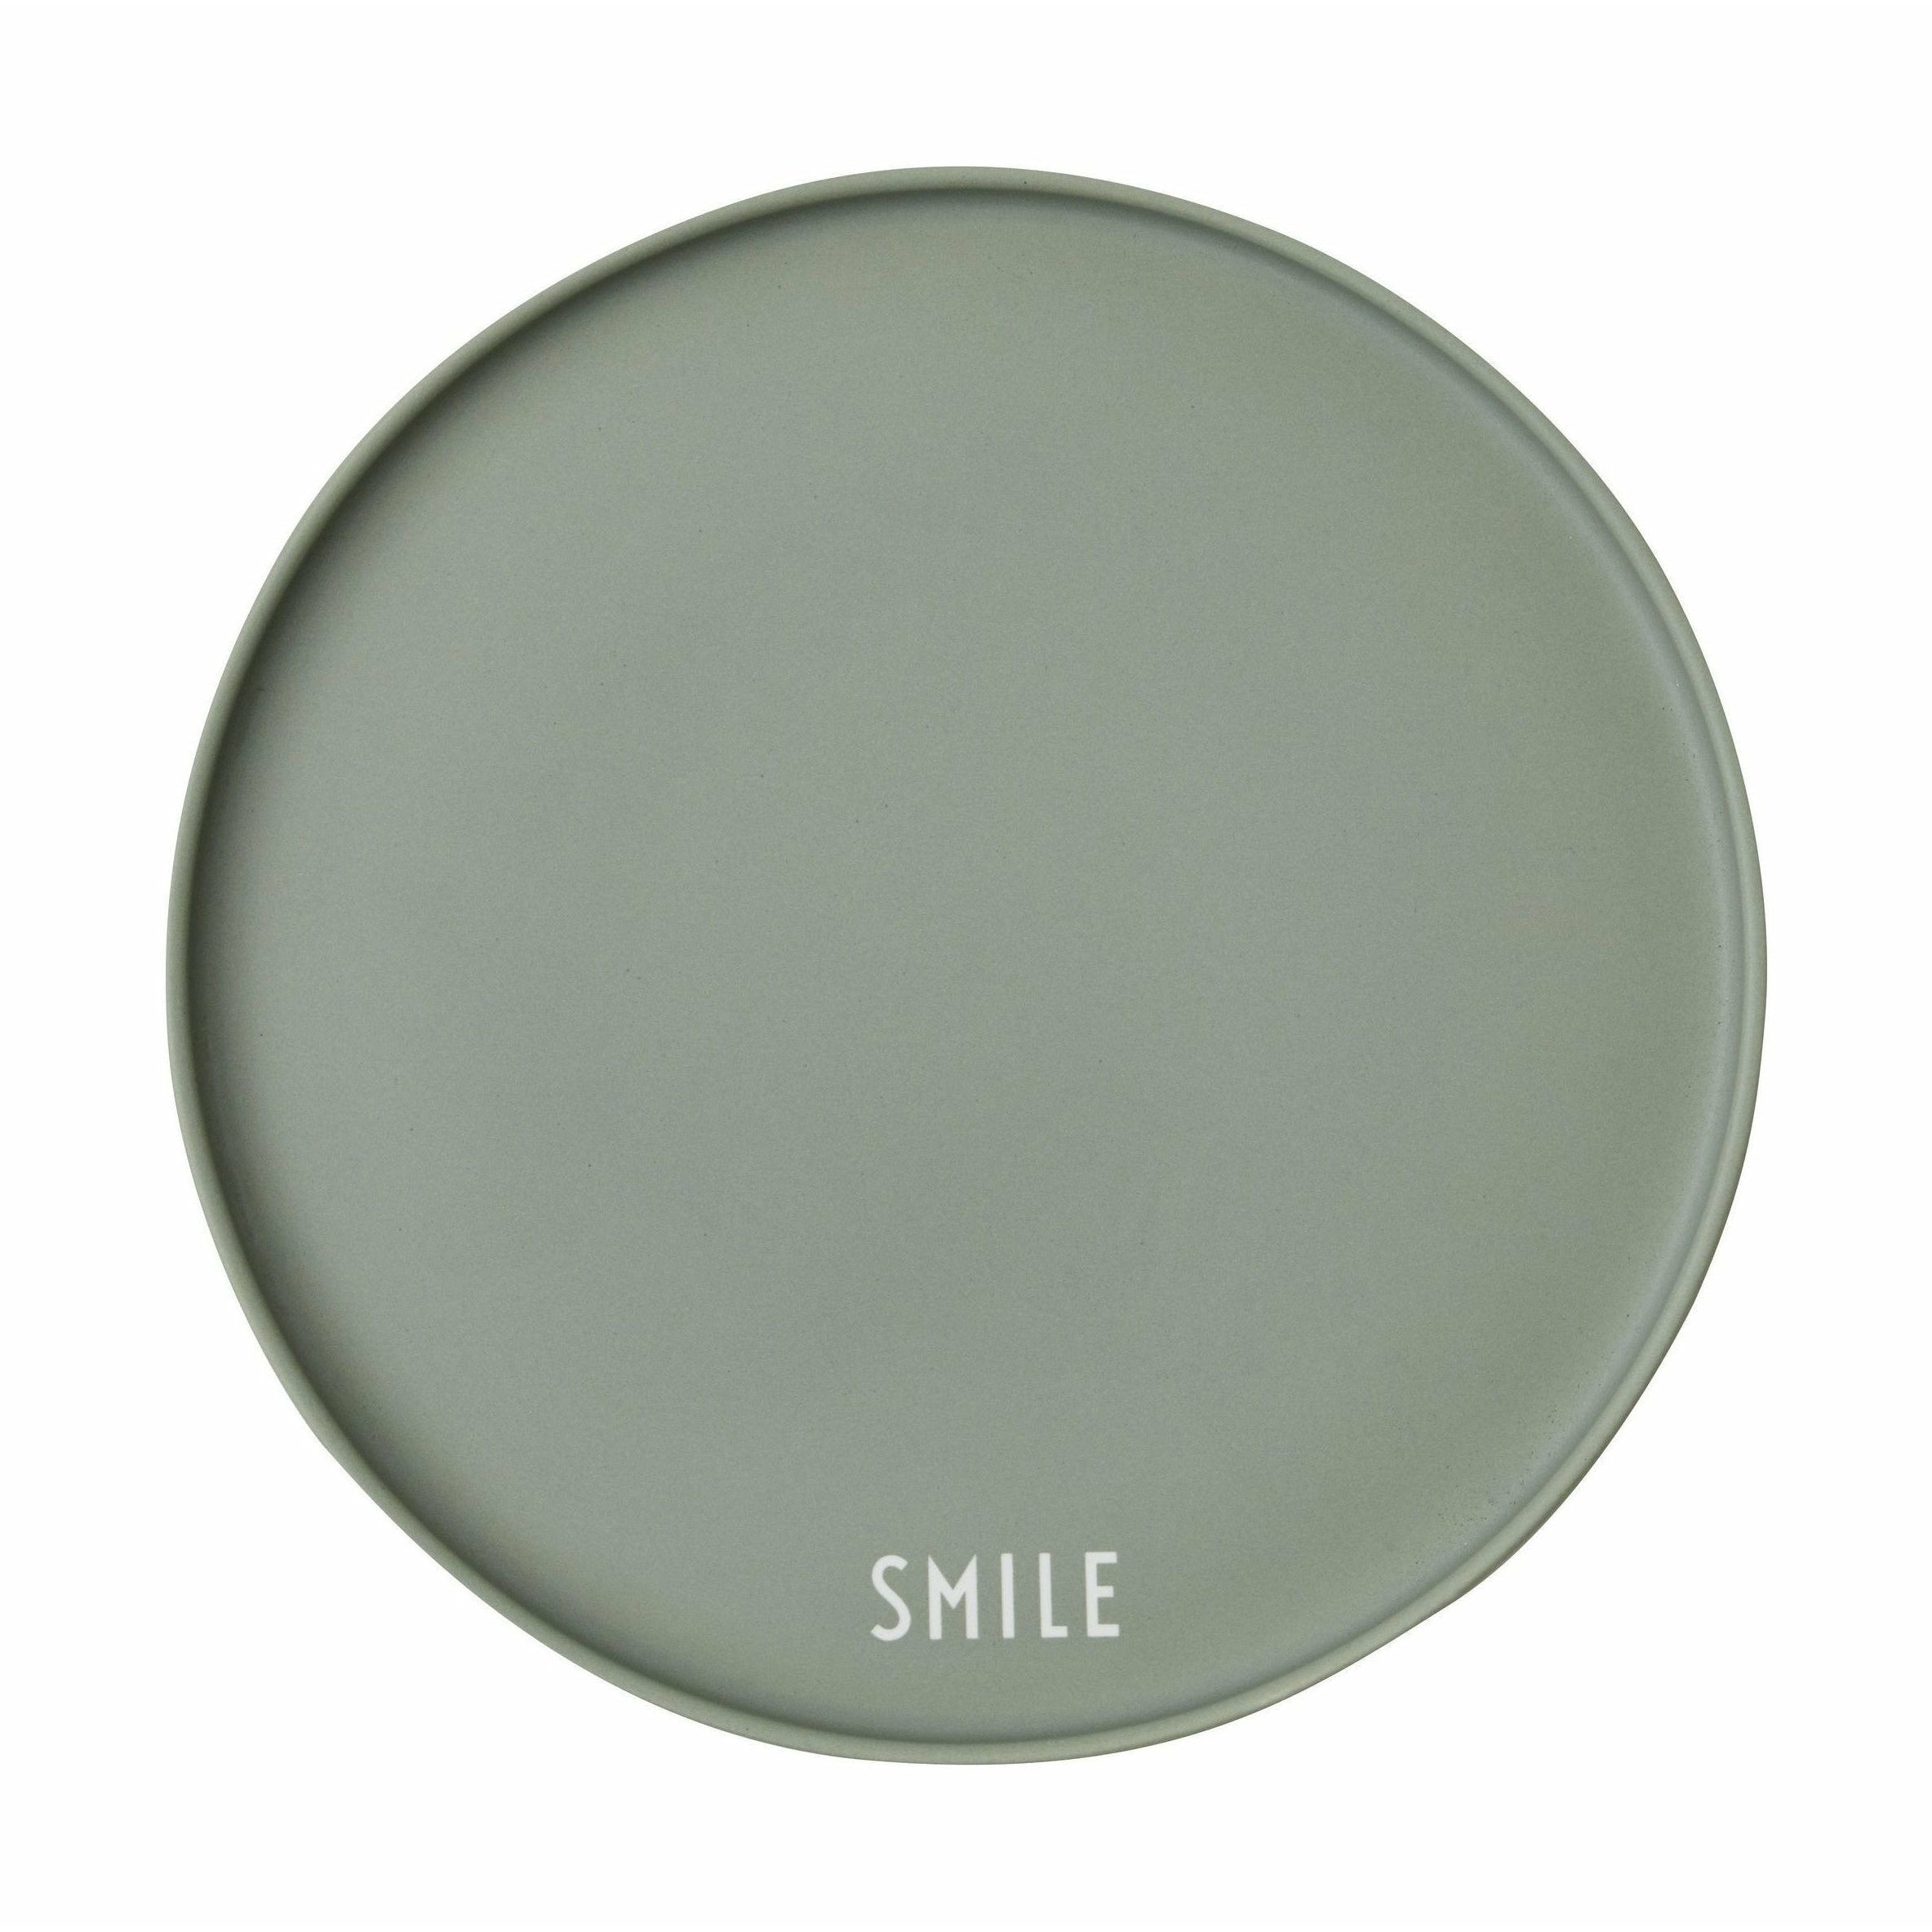 Letras de diseño Smile favorita de la taza, verde